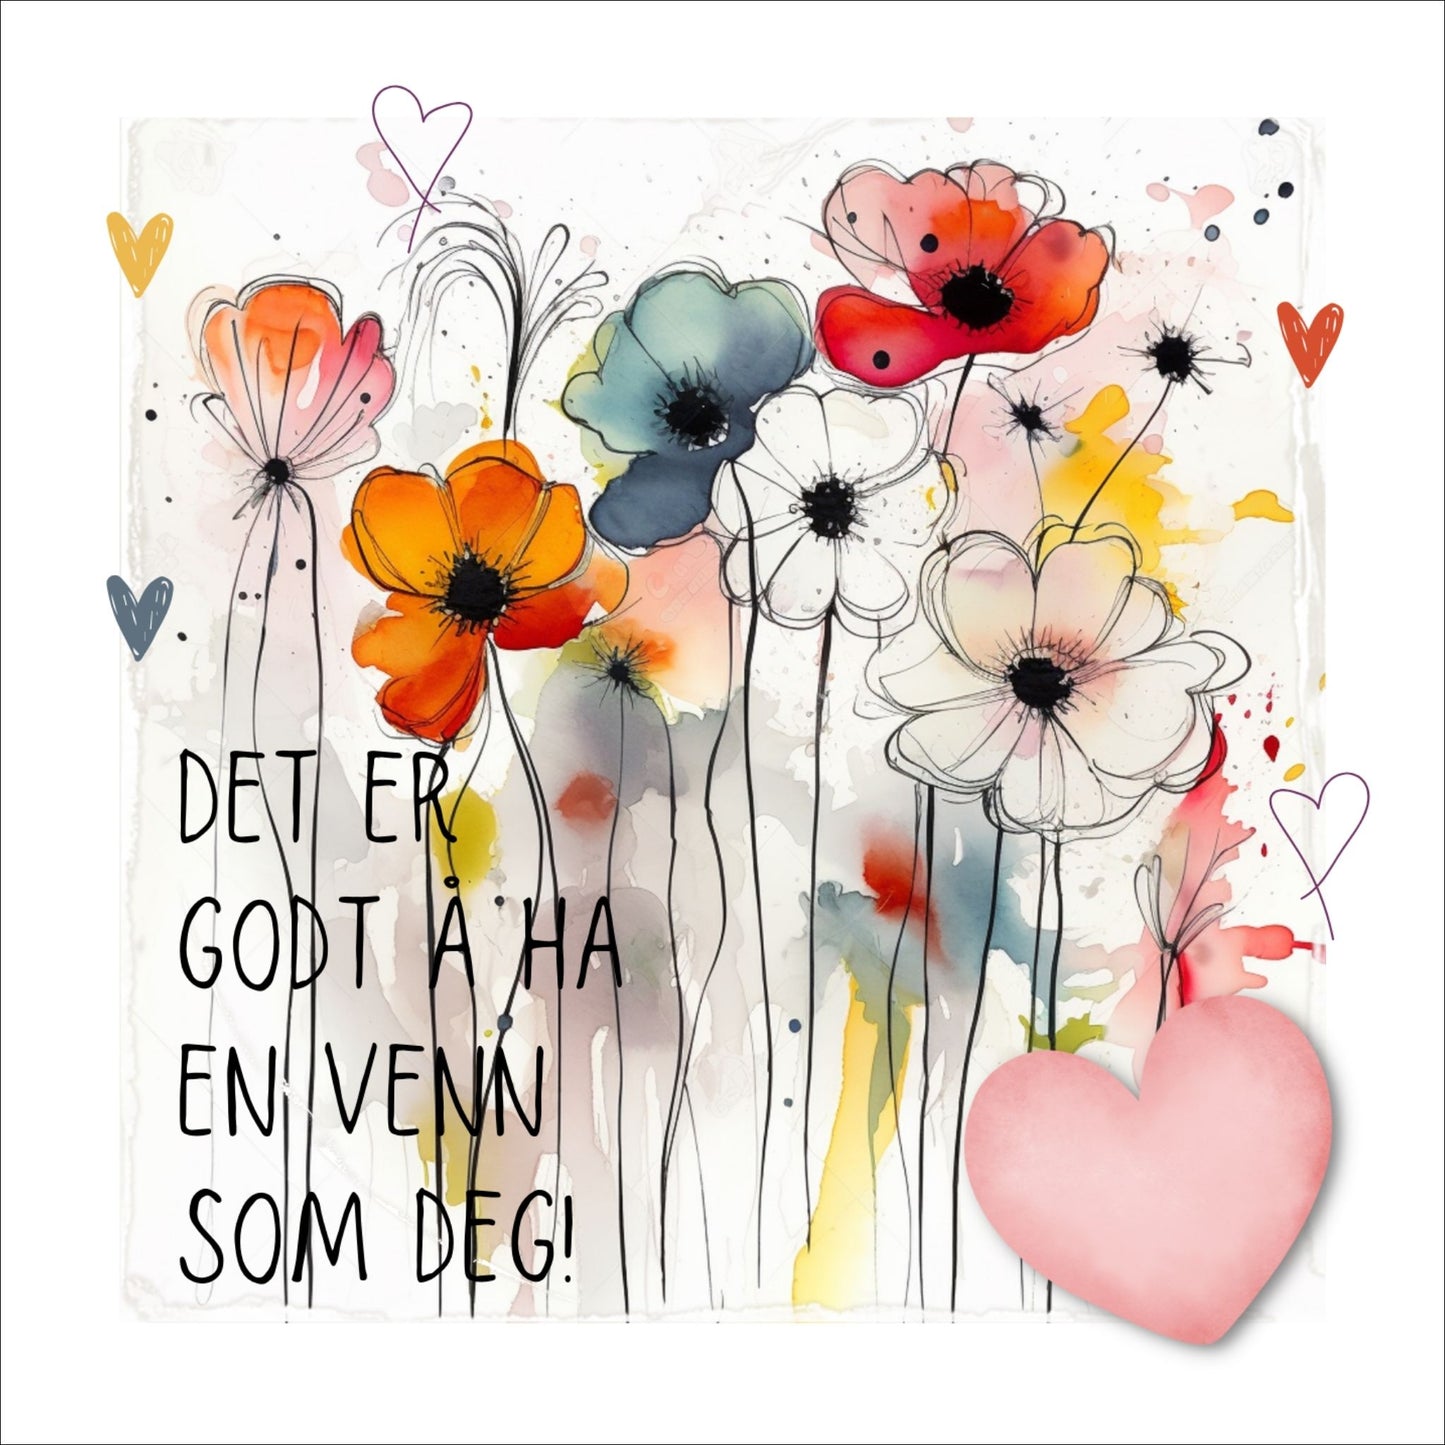 Plakat med rosa hjerte og tekst "Det er godt å ha en venn som deg" - og et motiv med blomster i gul, rød, hvit, blå og oransje. Med hvit kant på 1,5 cm.